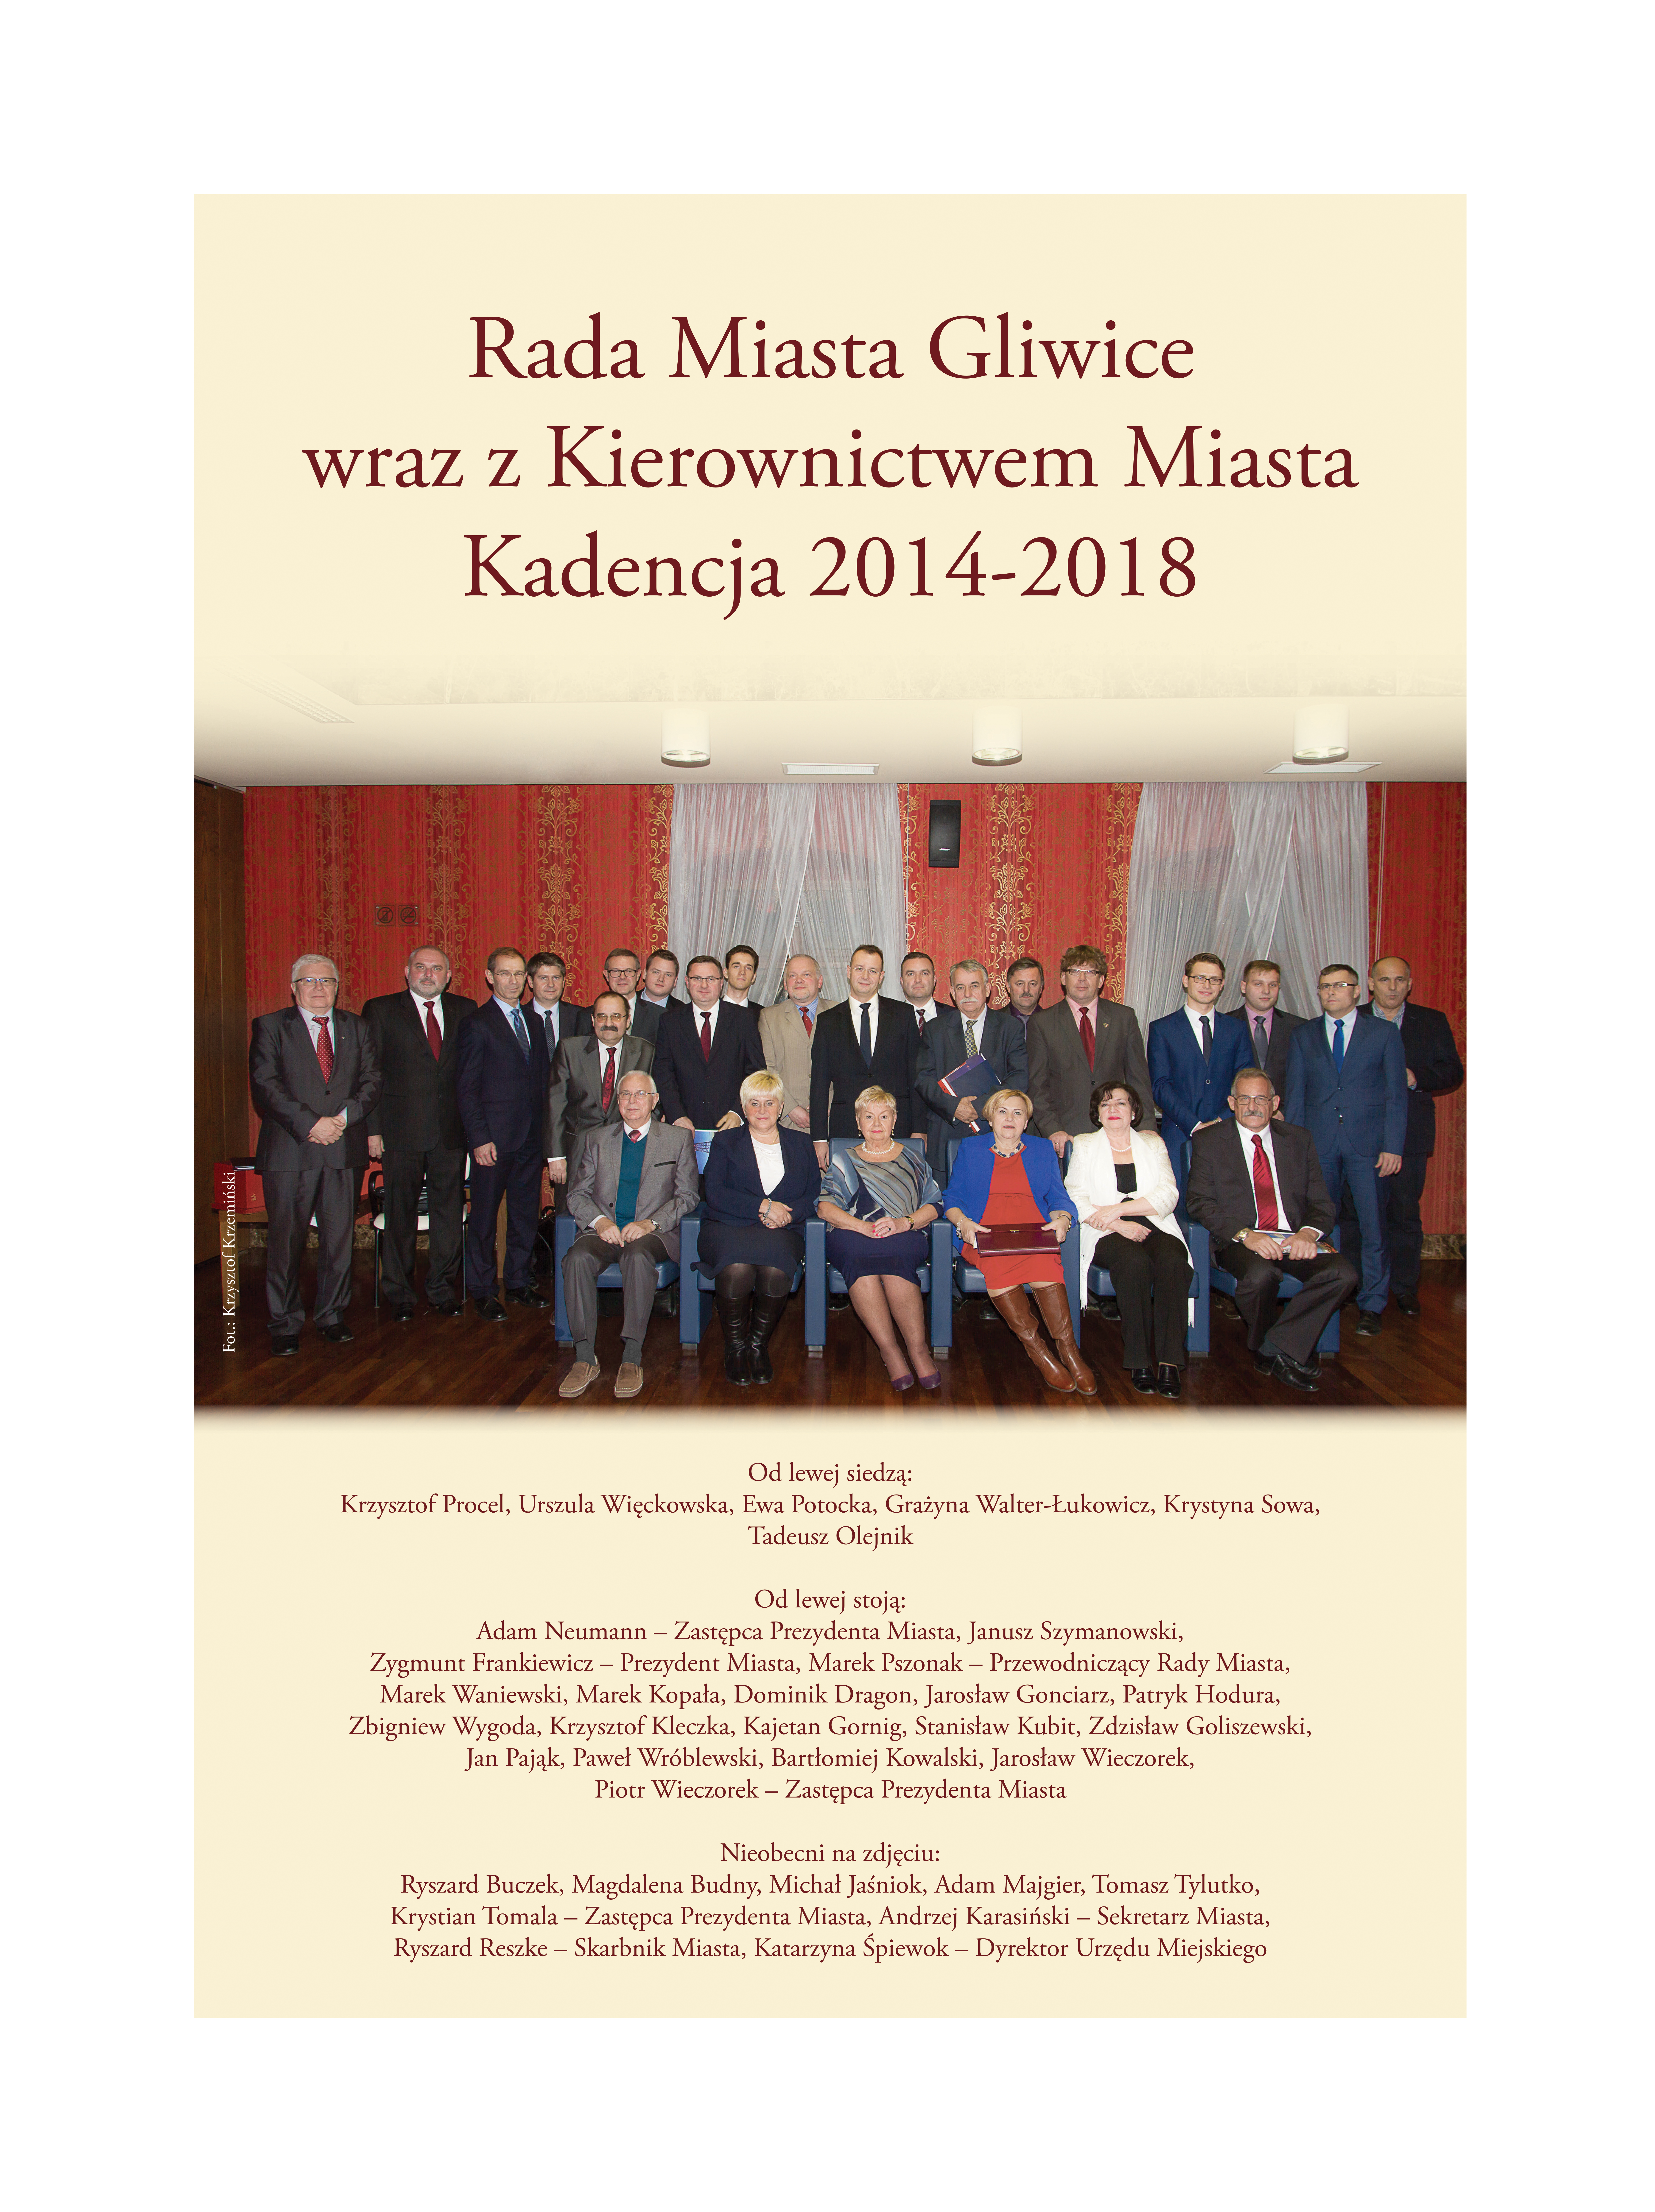 Zdjęcie Rady Miasta Gliwice z Kierownictwem Miasta kadencja 2014-2018